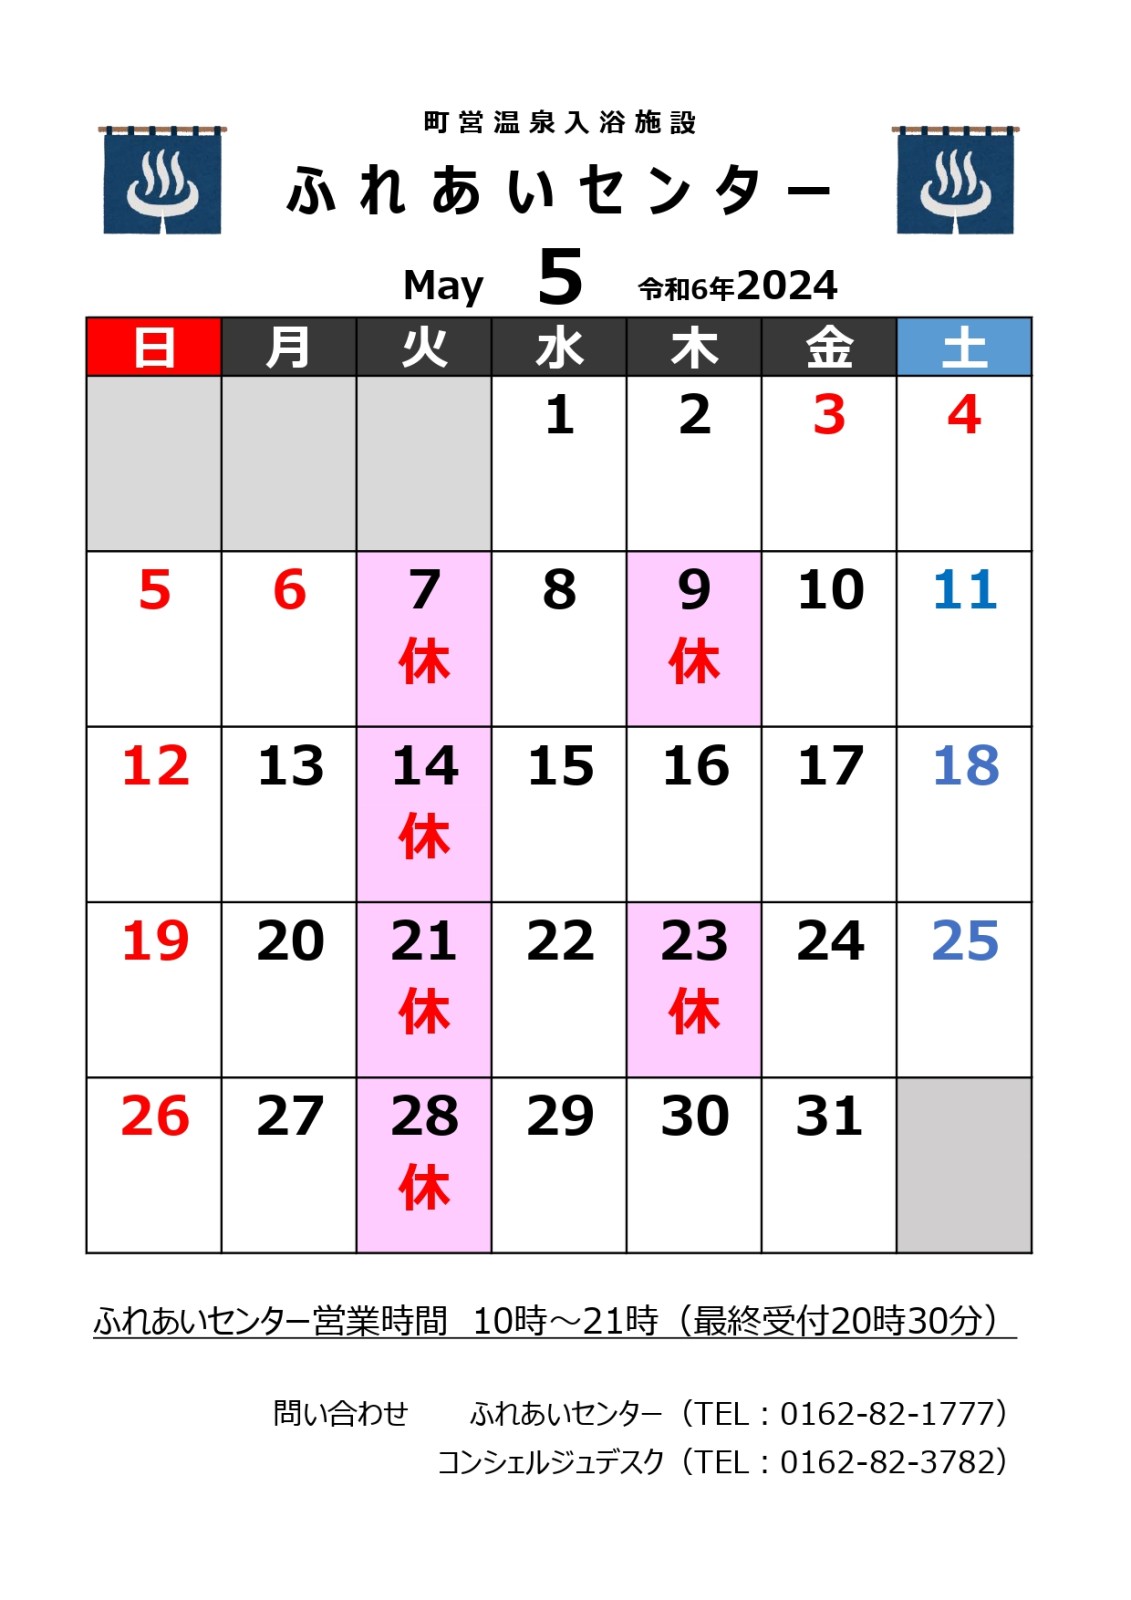 【ふれあいセンター】5月の営業について